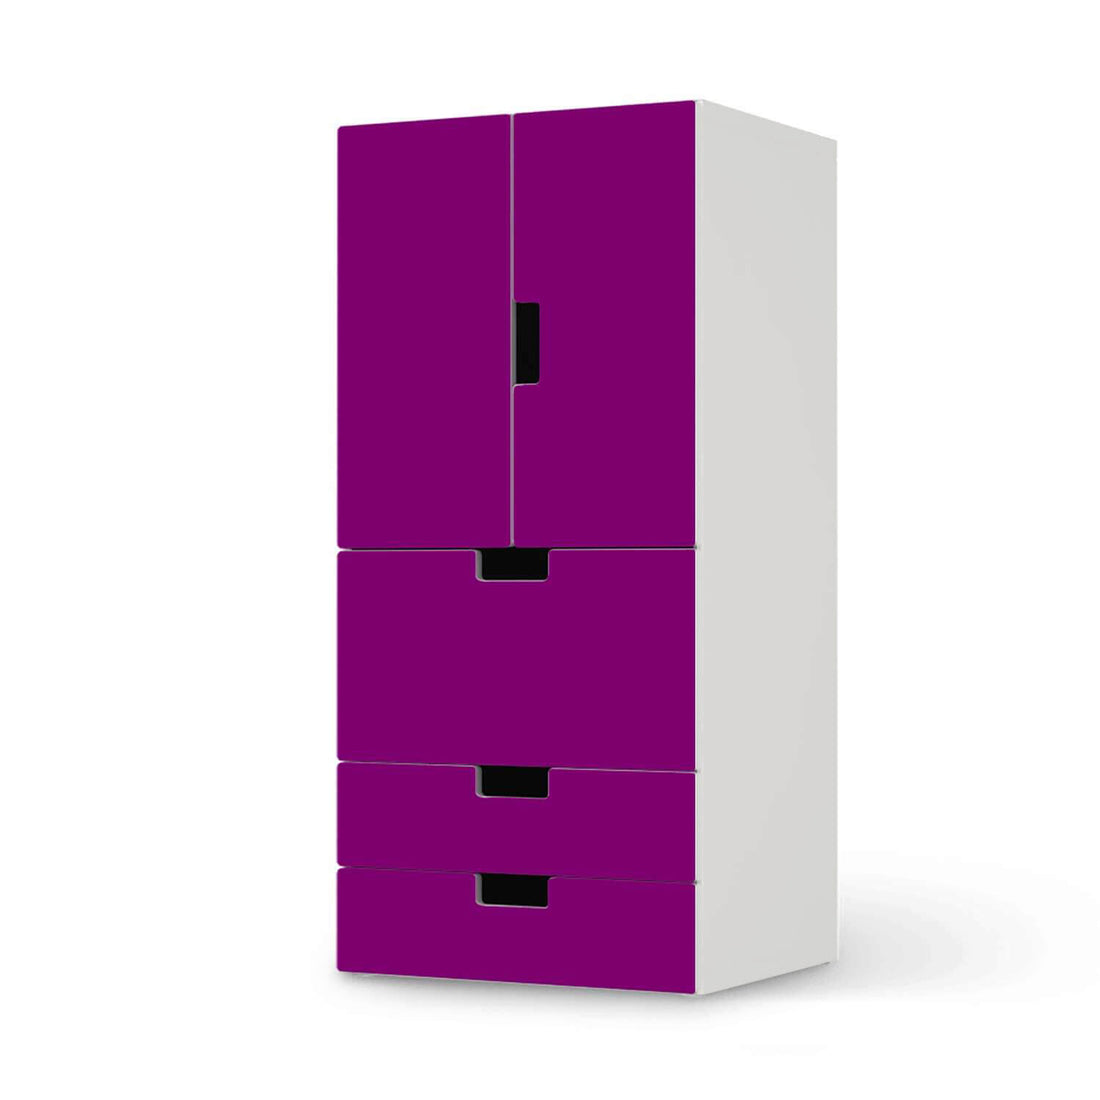 Möbelfolie Flieder Dark - IKEA Stuva kombiniert - 3 Schubladen und 2 kleine Türen  - weiss